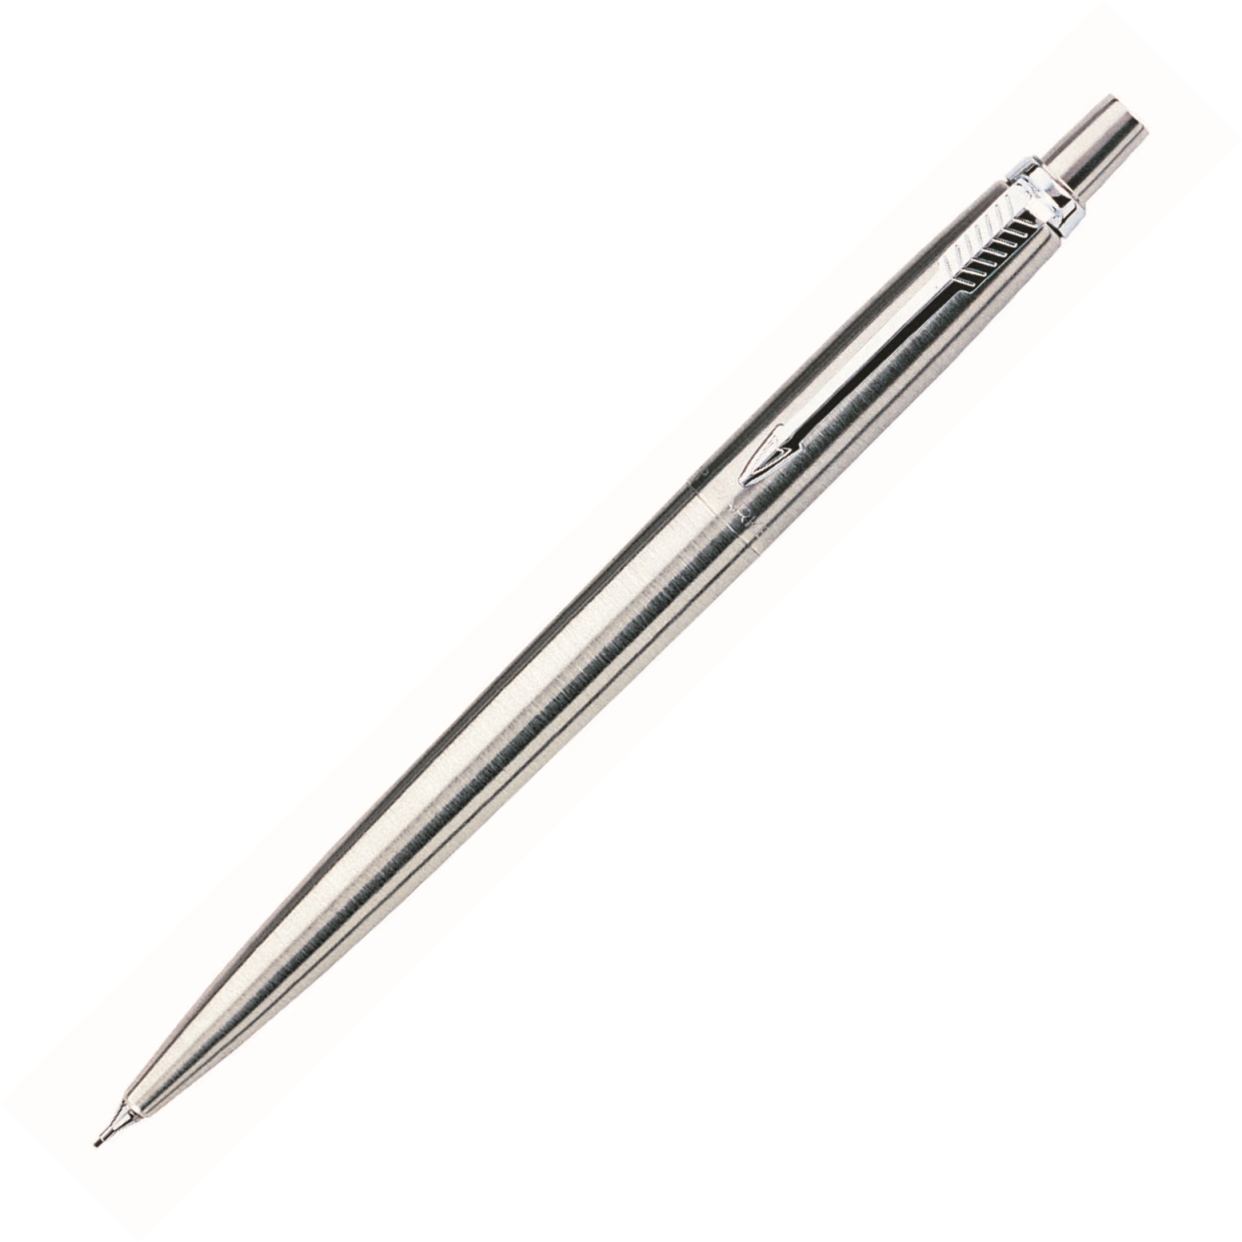 Creion mecanic 0.5mm, argintiu, din otel inoxidabil, cu accesorii cromate, PARKER Jotter